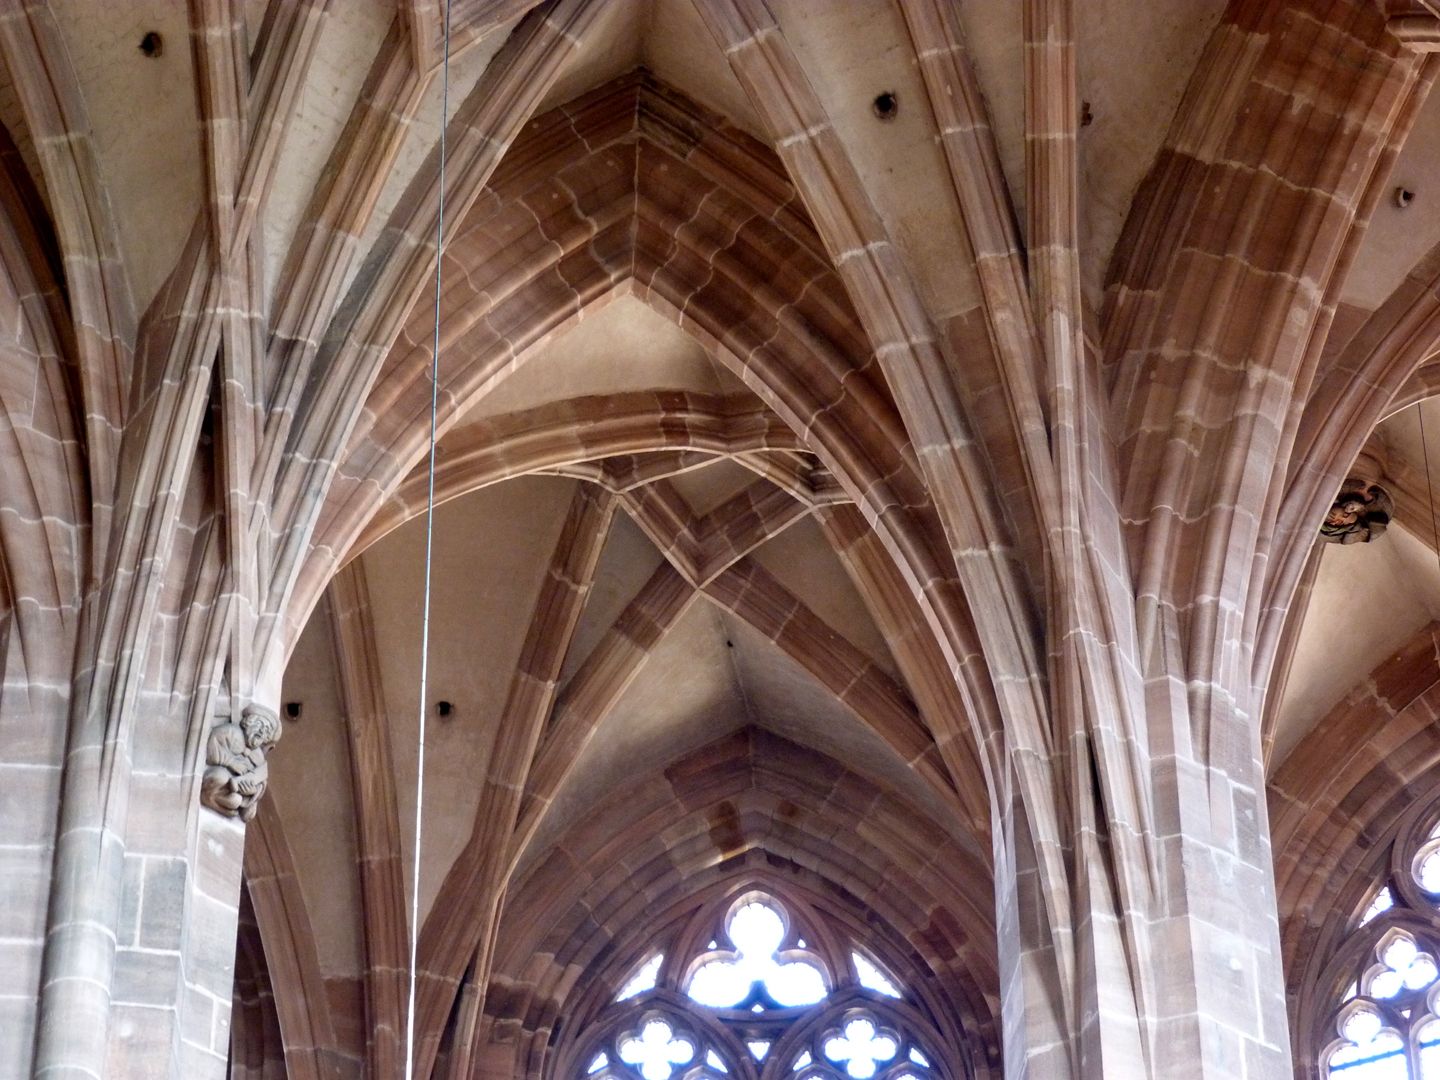 Die Lorenzkirche als Architektur Gewölbeanfänger im Chor. Sie schießen aus unterschiedlichen Steinlagen kapitelllos aufwärts, sich zum Teil überkreuzend.